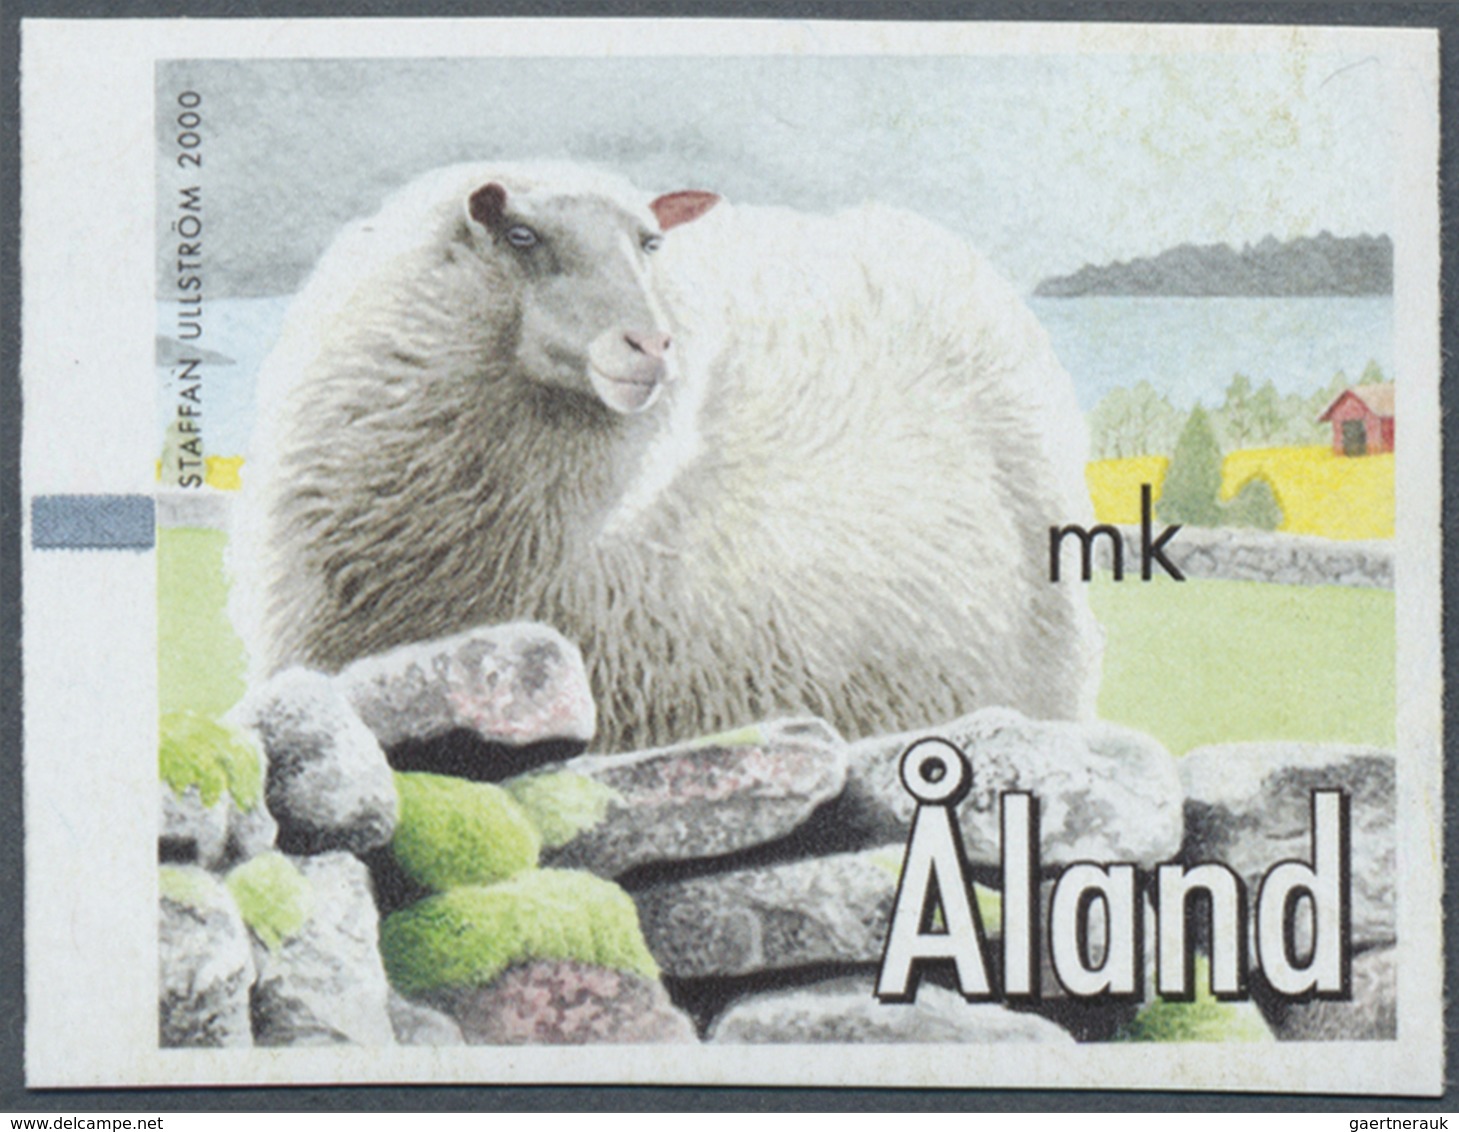 ** Finnland - Alandinseln: Machine Labels: 2000, Design "Sheep" Without Imprint Of Value, Unmounted Min - Ålandinseln